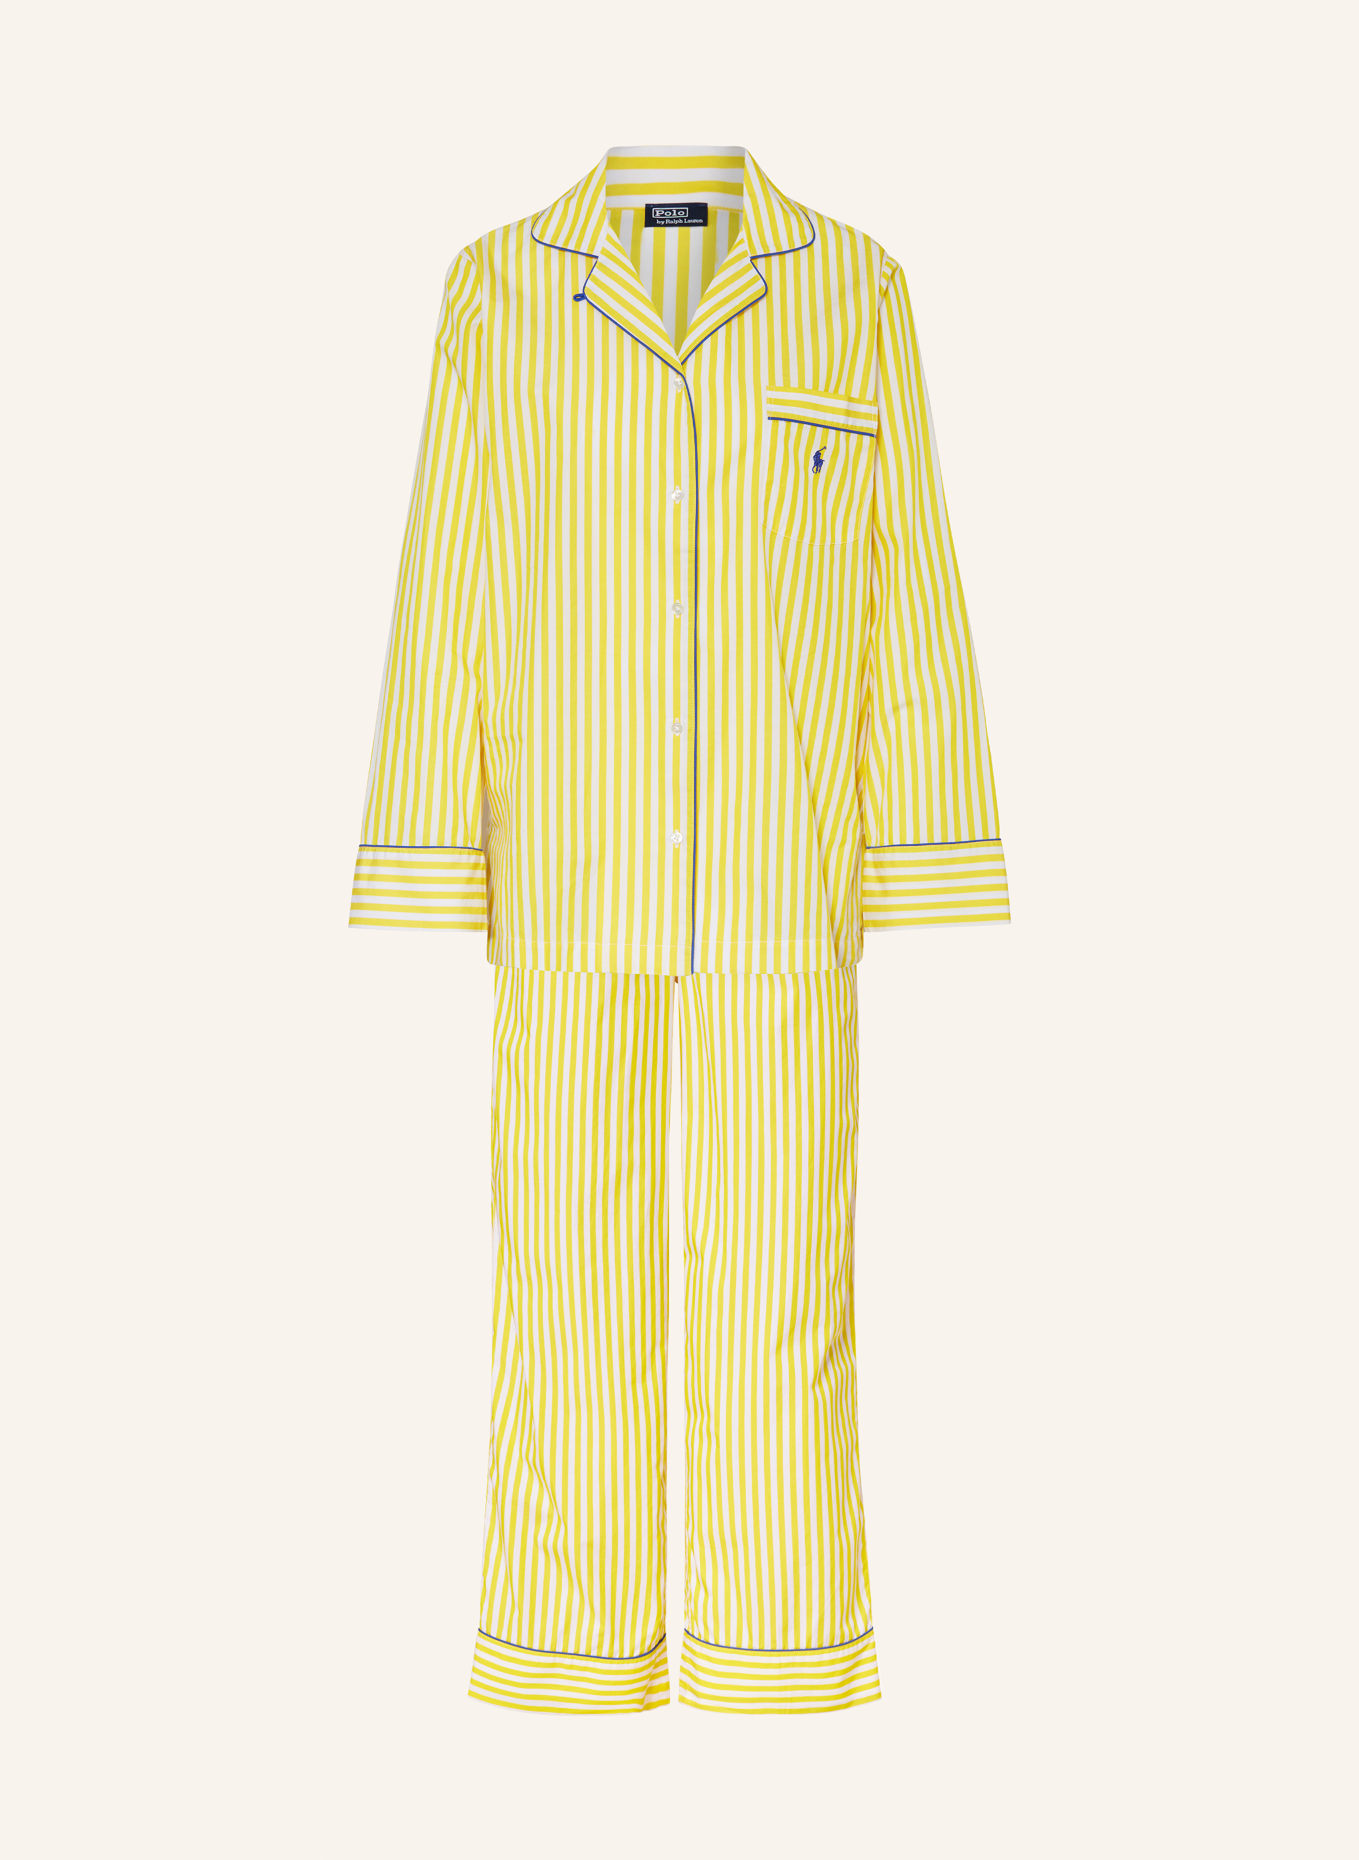 POLO RALPH LAUREN Schlafanzug, Farbe: WEISS/ GELB (Bild 1)